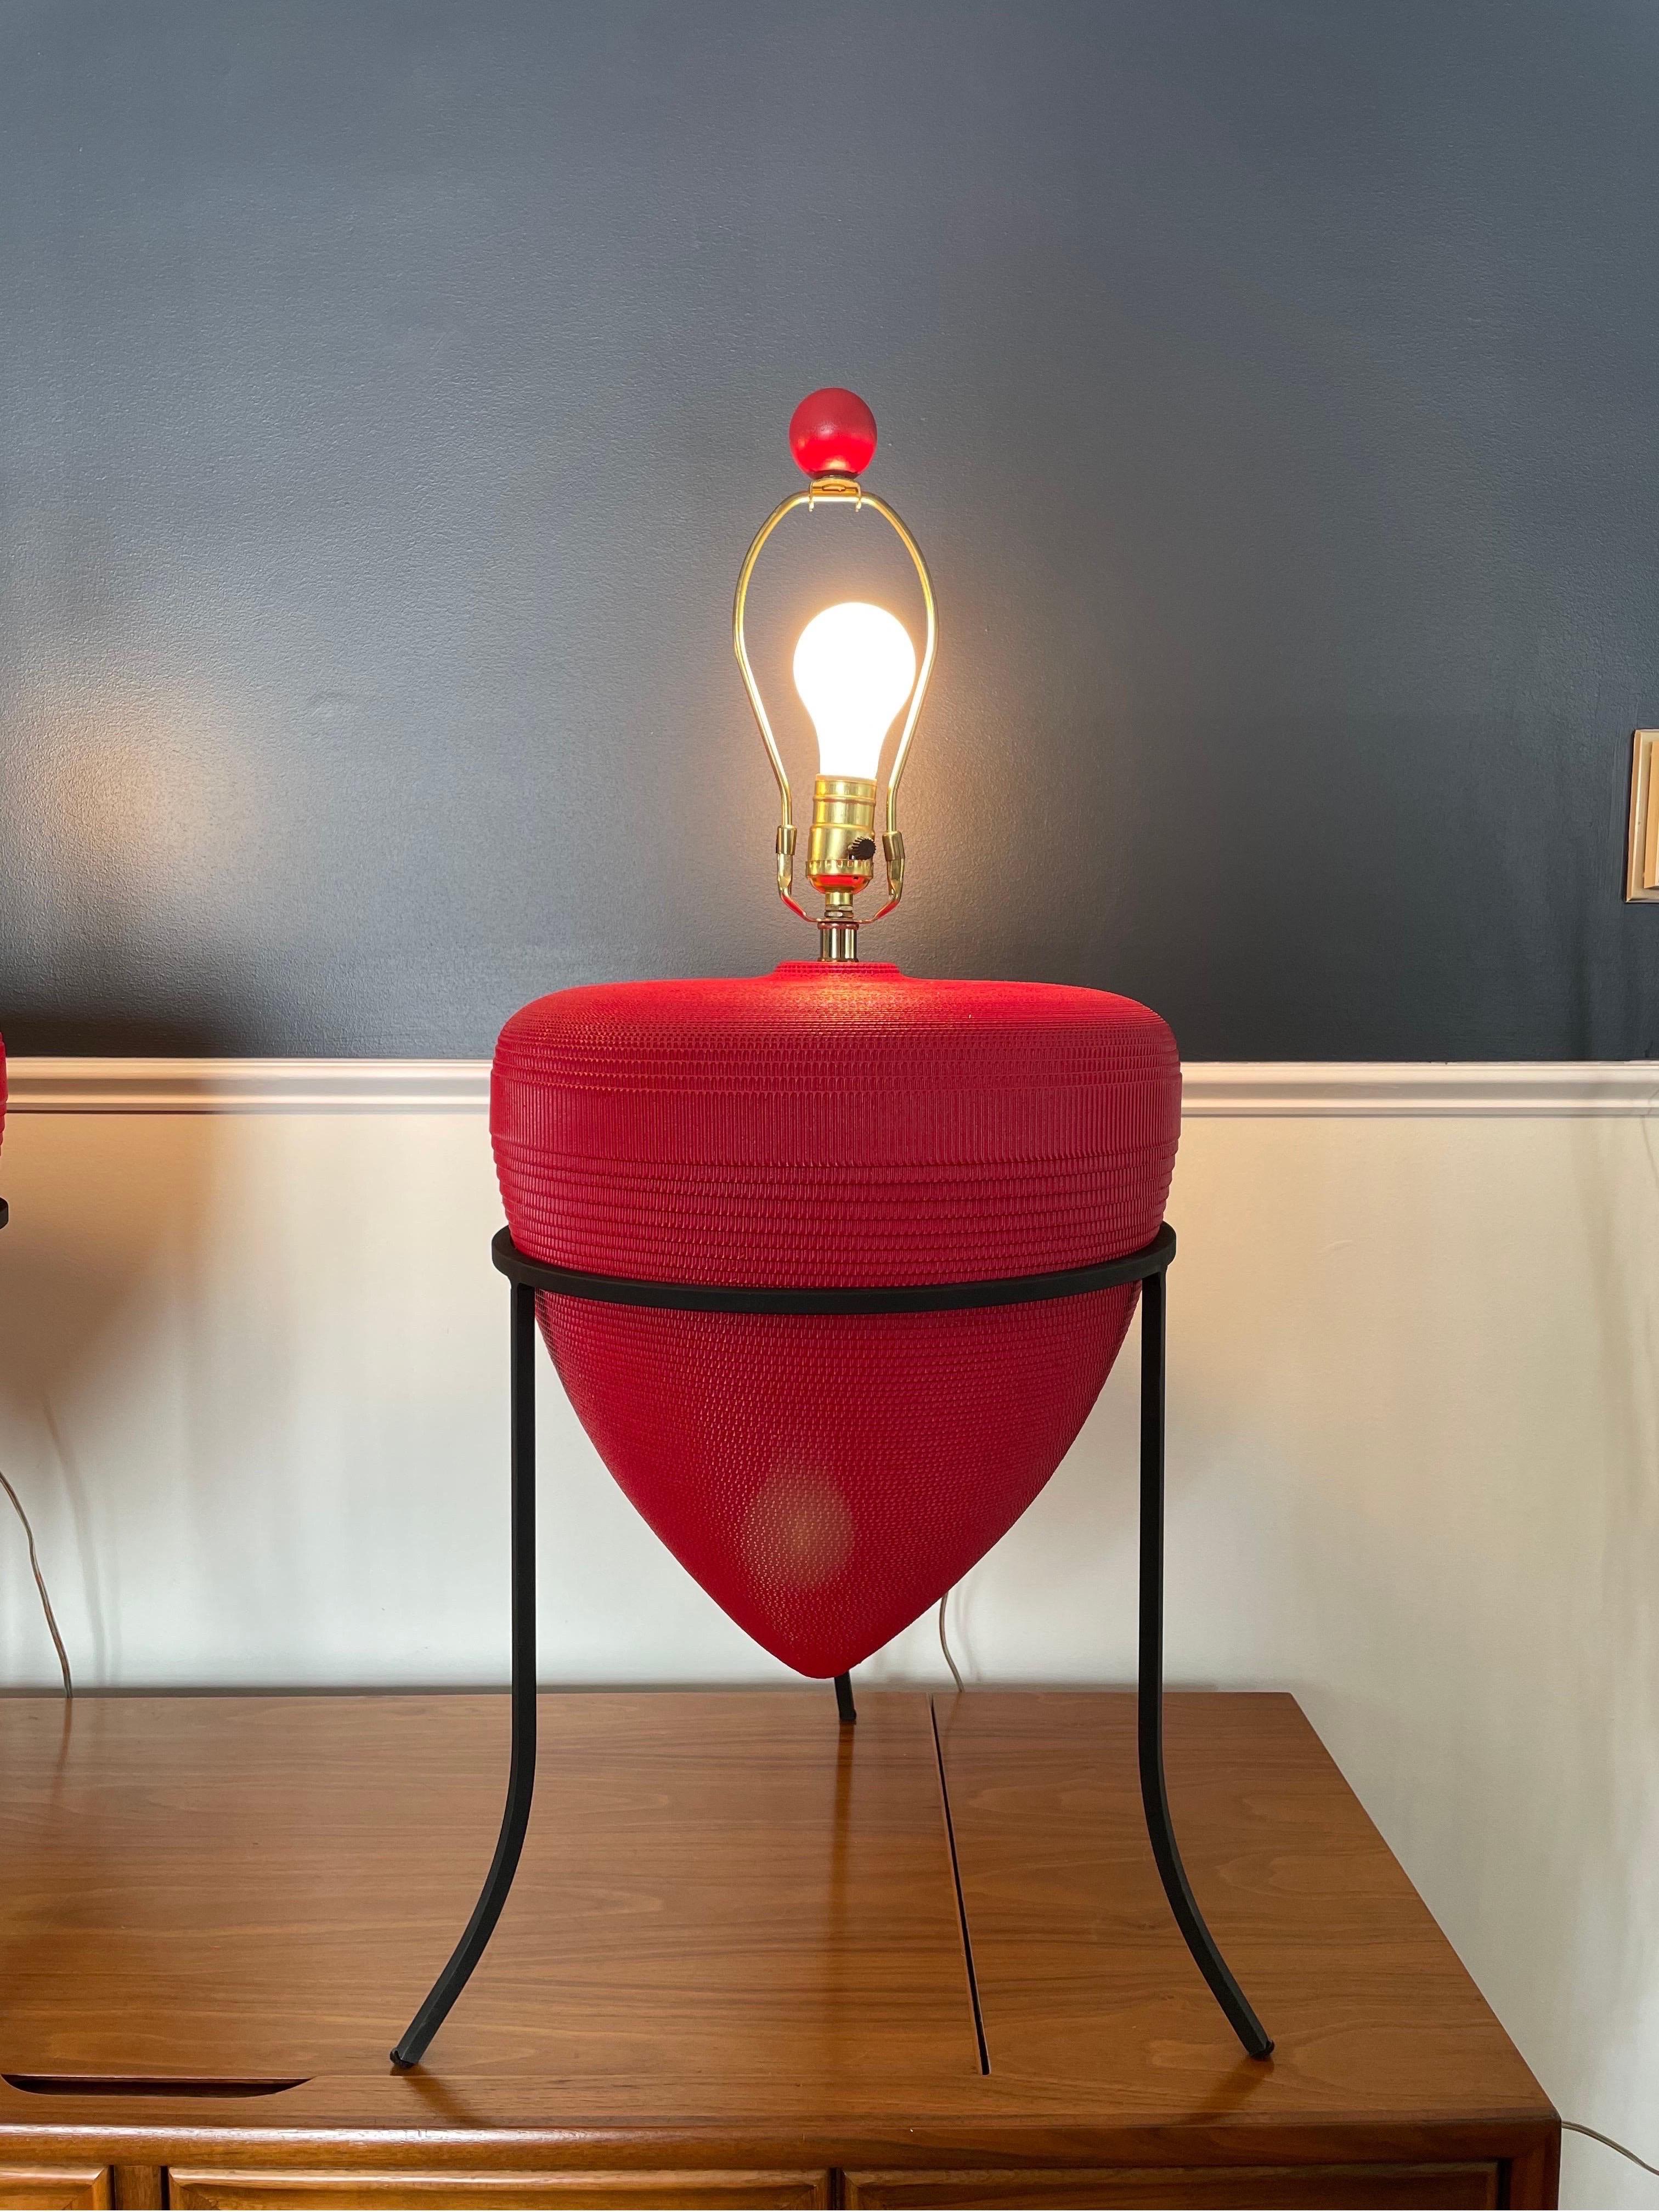 Paire de lampes en forme d'urne avec abat-jour d'origine, datant des années 80 ou 90. Fabriquées à partir de carton ondulé emballé, ces lampes uniques en forme d'urne reposent sur un pied tripode en fer forgé. Une touche de couleur dans un rouge